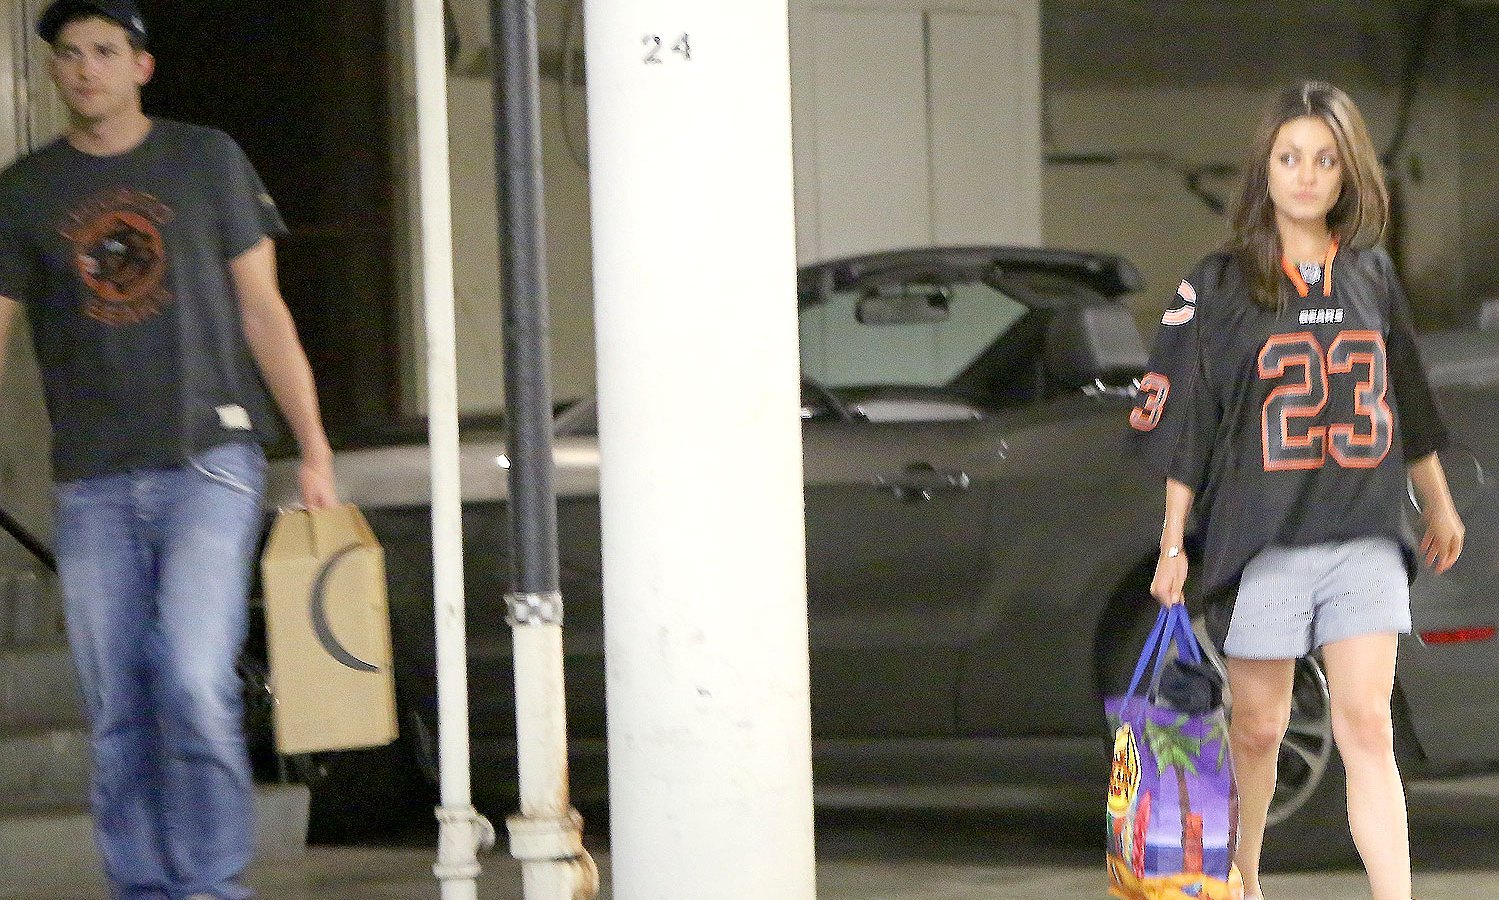 Ashton Kutcher and Mila Kunis in Hollywood on Sept 15, 2013.